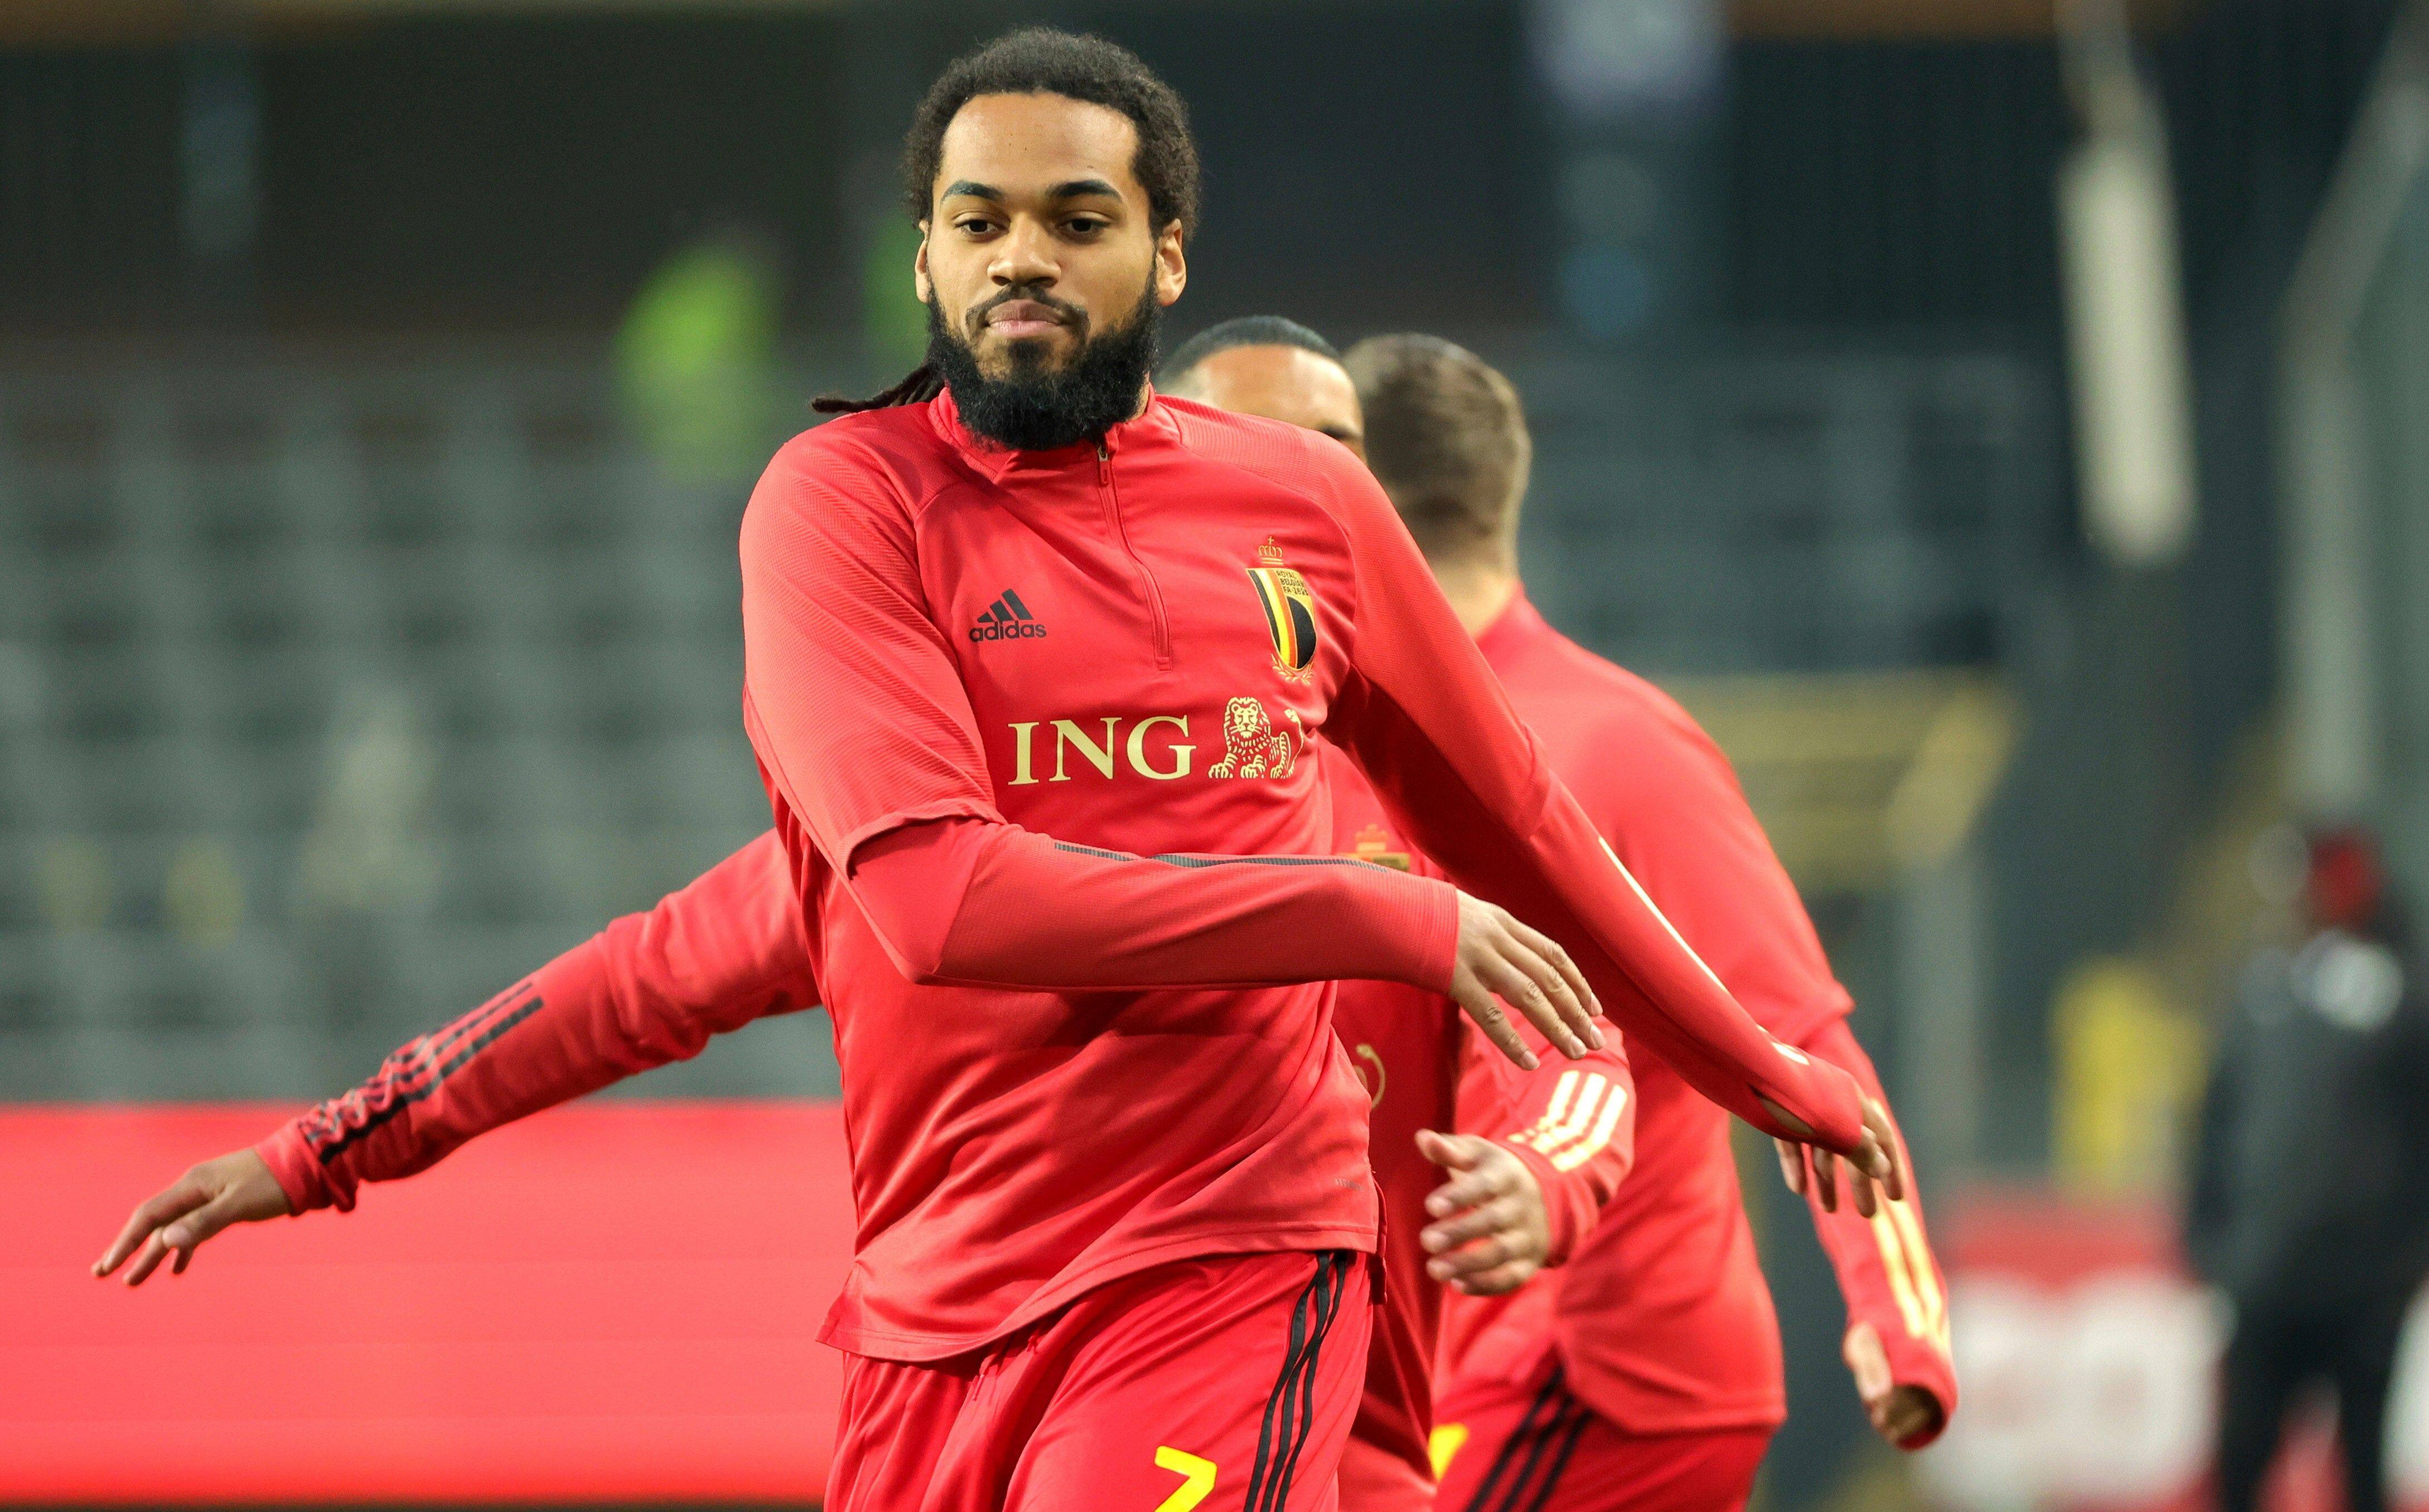 Le nouveau maillot des Diables Rouges présenté à l'Union belge, Les Diables  qualifiés pour l'Euro